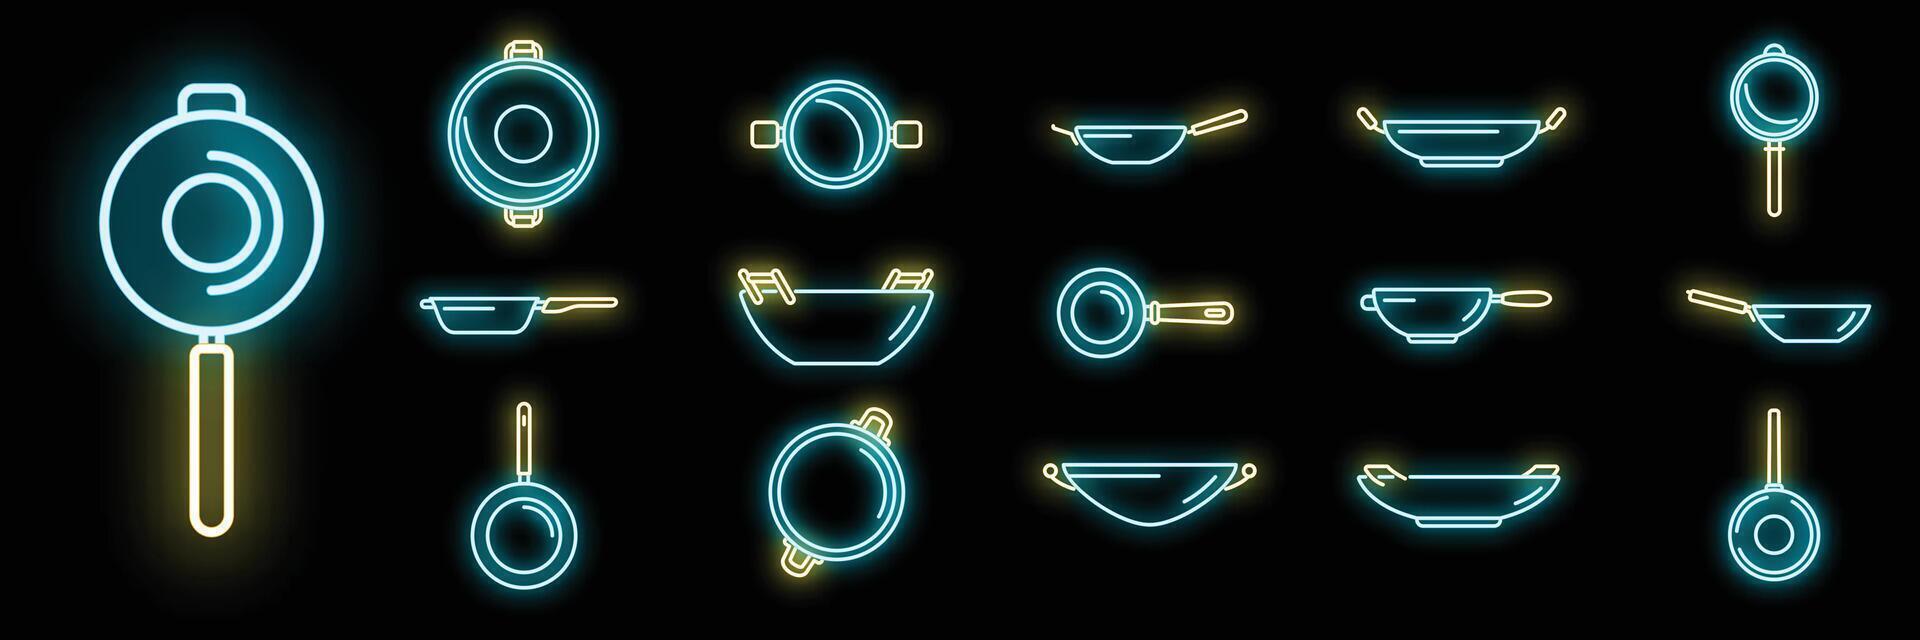 le icone della padella wok impostano il neon vettoriale